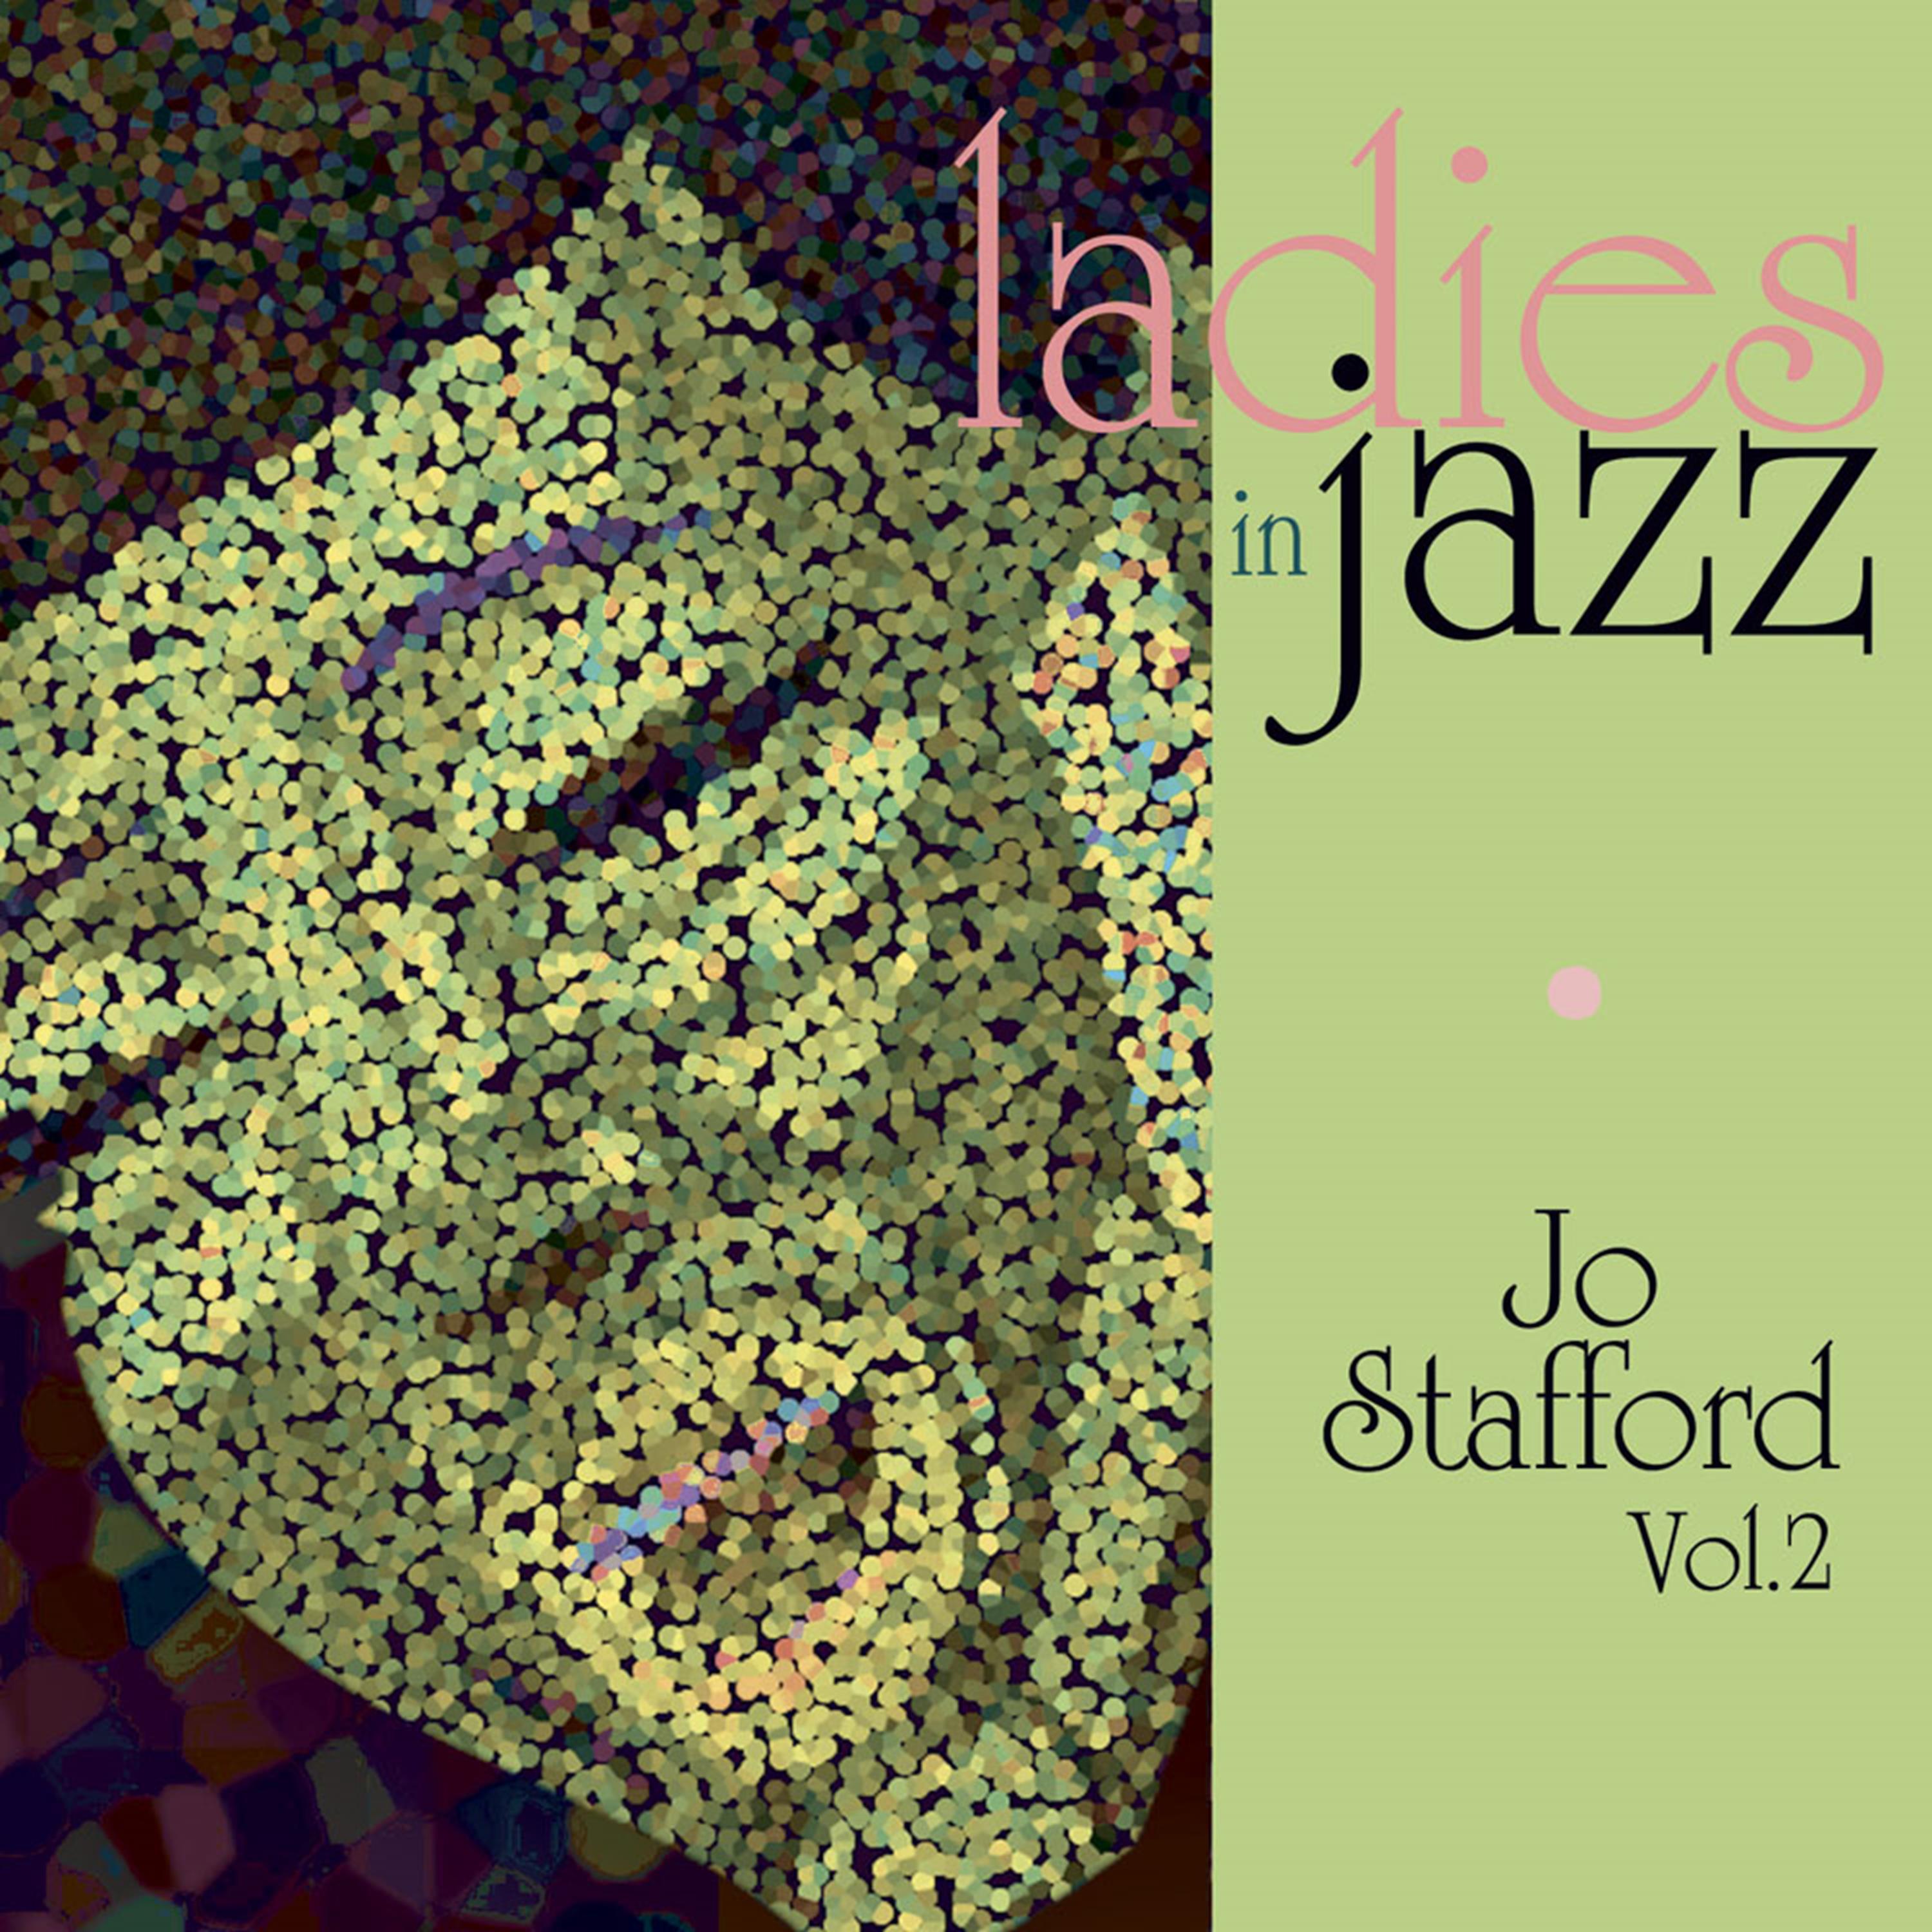 Ladies in Jazz - Jo Stafford, Vol. 2